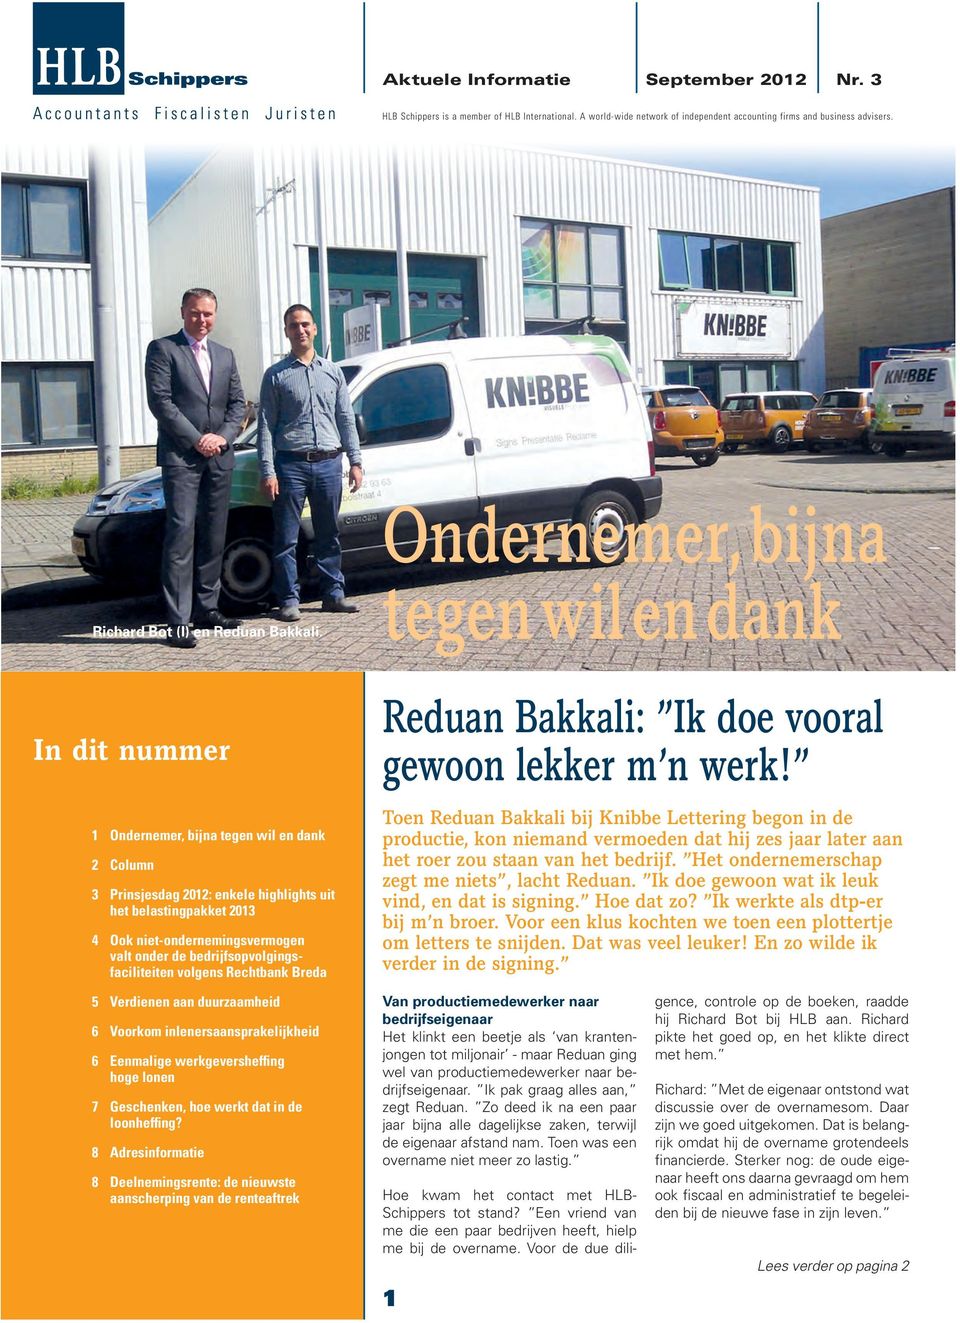 valt onder de bedrijfsopvolgingsfaciliteiten volgens Rechtbank Breda Reduan Bakkali: Ik doe vooral gewoon lekker m n werk!